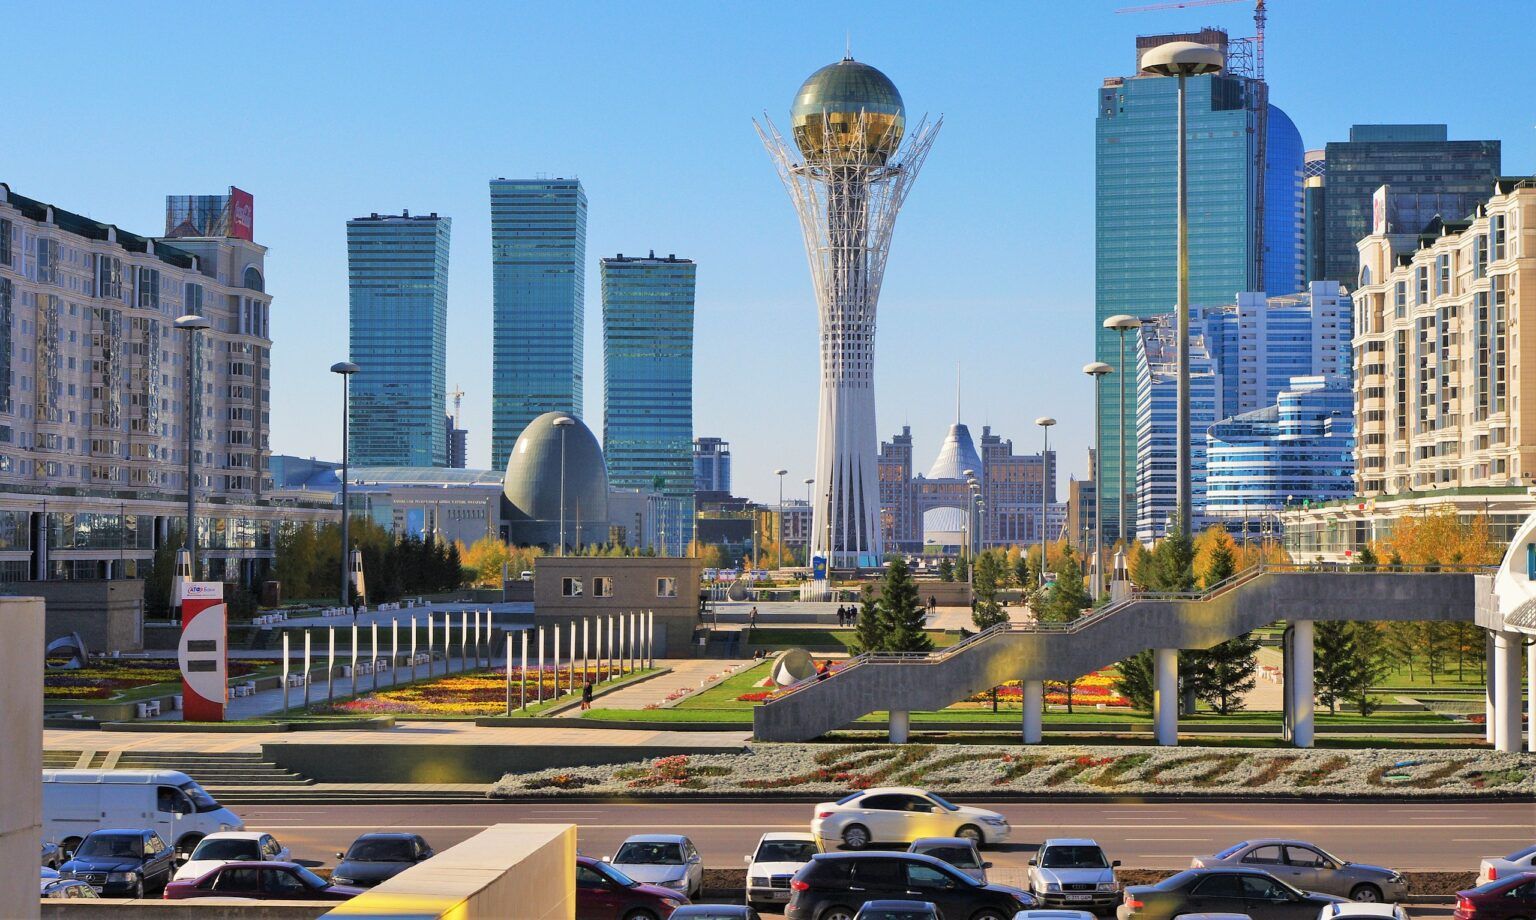 ASTANA ACCUEILLERA UN CONGRÈS DE L'INDUSTRIE MINIÈRE AU KAZAKHSTAN